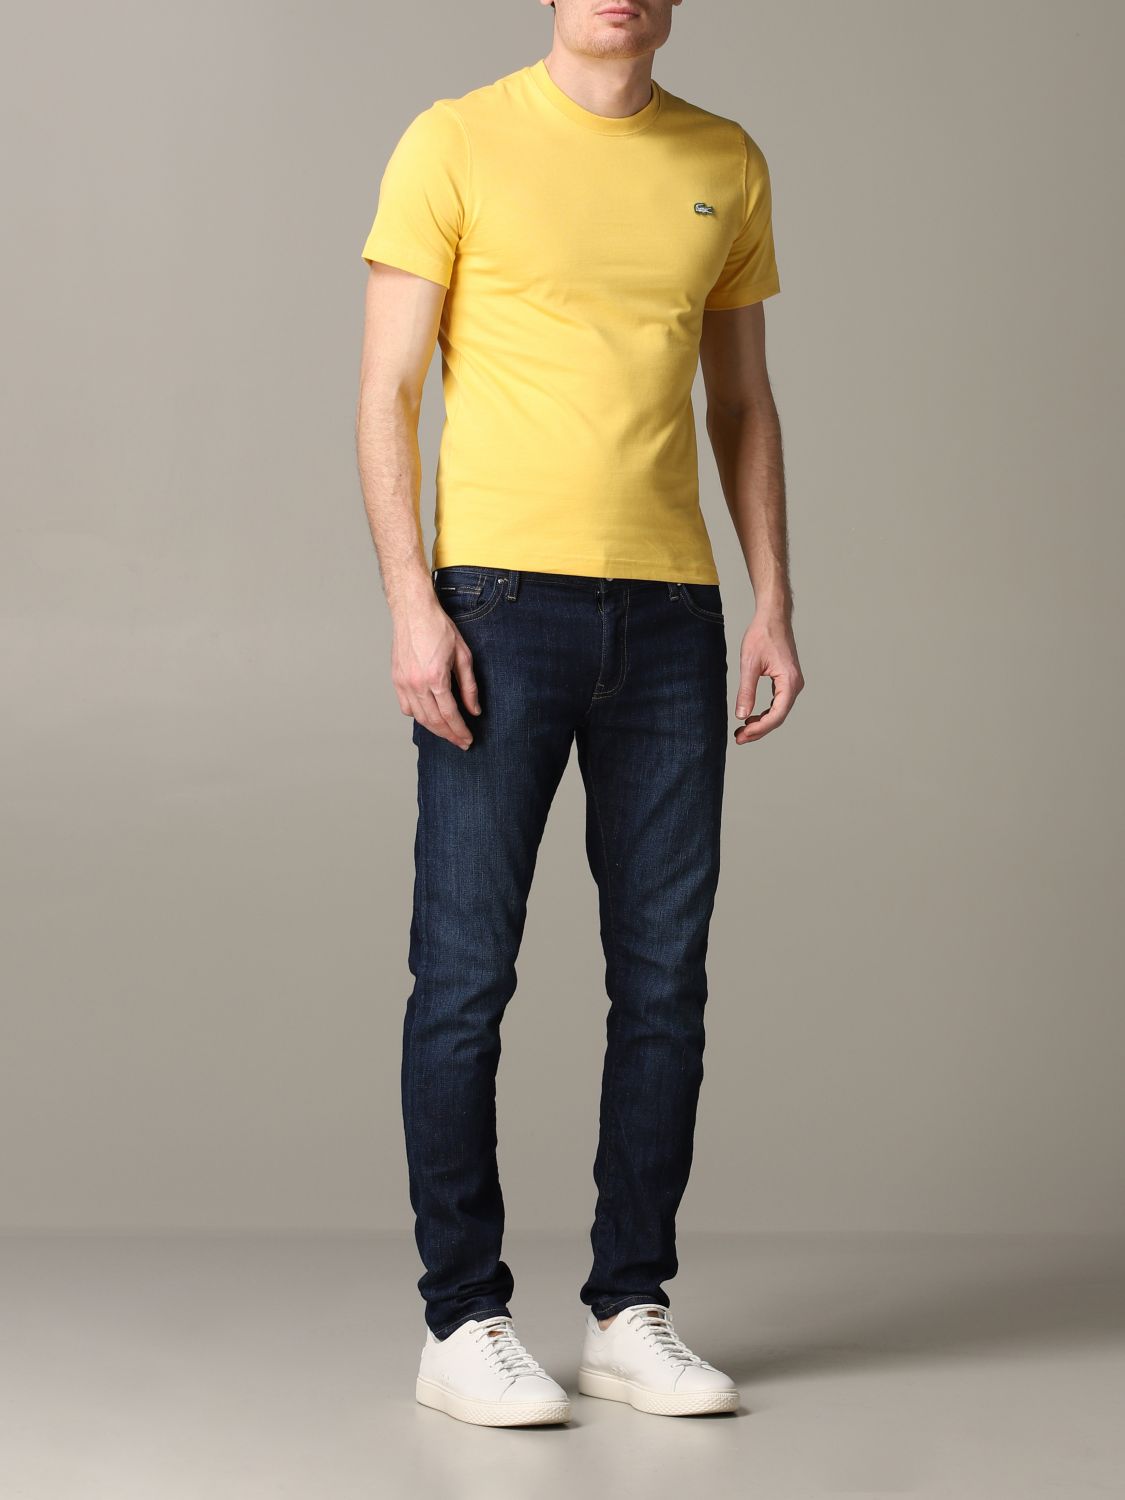 Lacoste L!Ve Outlet: T-shirt men | T-Shirt Lacoste L!Ve Men Yellow | T ...